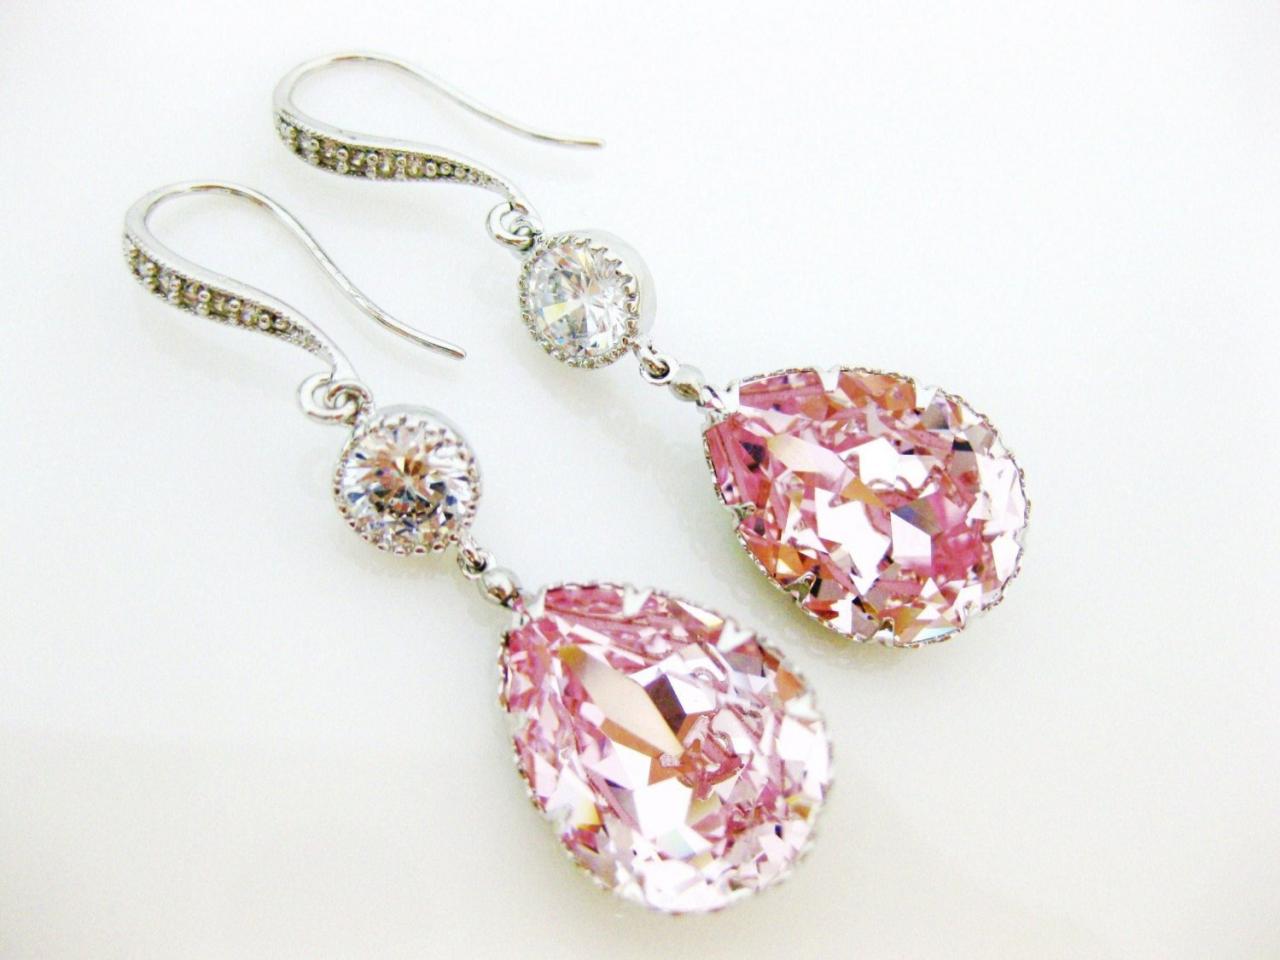 Blush Pink Teardrop Earrings Swarovski Rosaline Crystal Earrings Light Pink Earrings Bridesmaids Gift Bridal Jewelry Cubic Zirconia (e172)